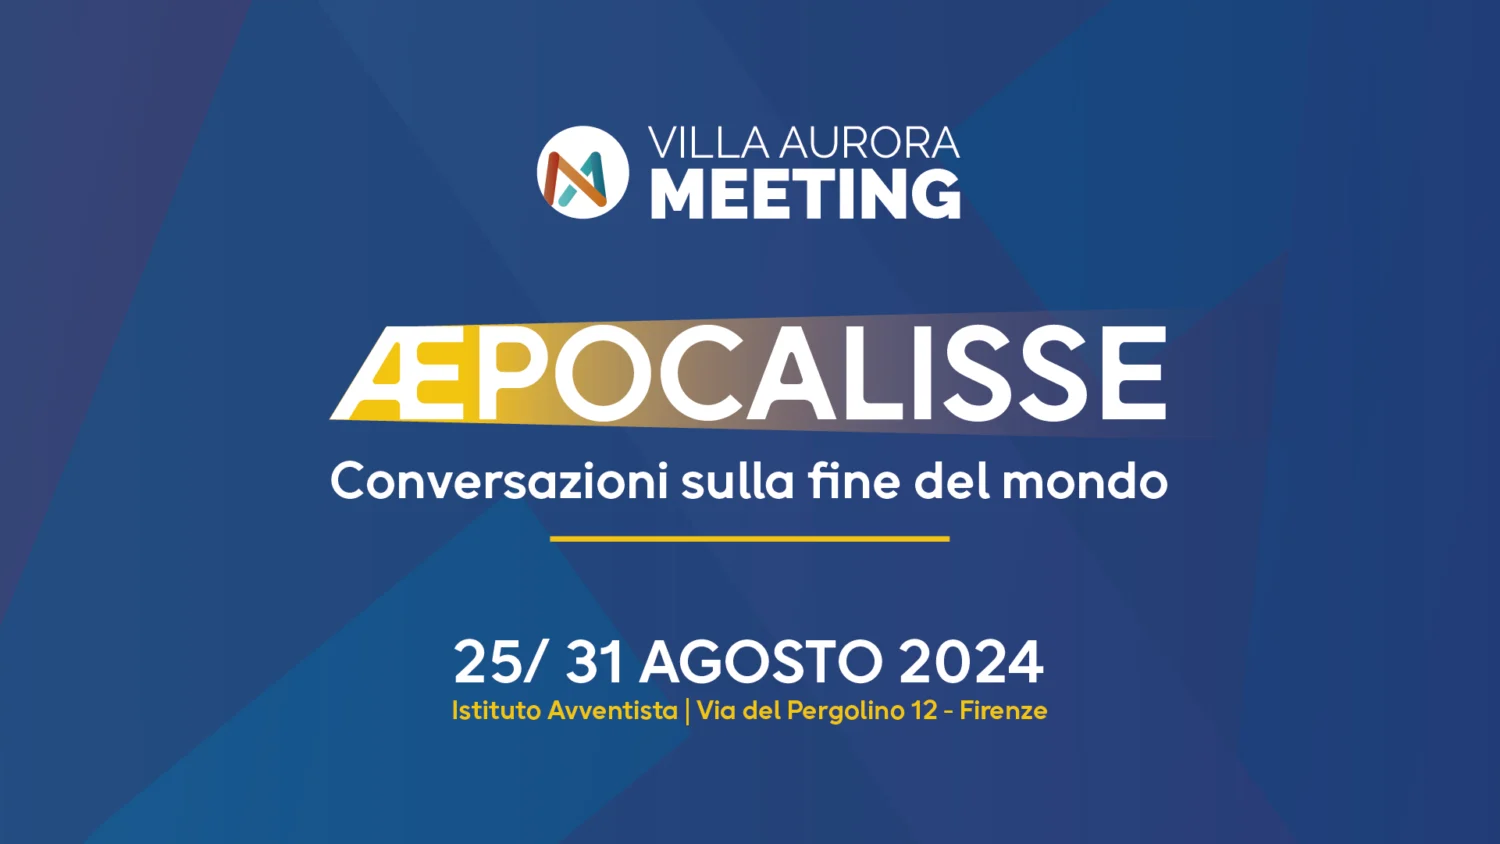 Villa Aurora Meeting 2024. ÆPOCALISSE. Conversazioni sulla fine del mondo